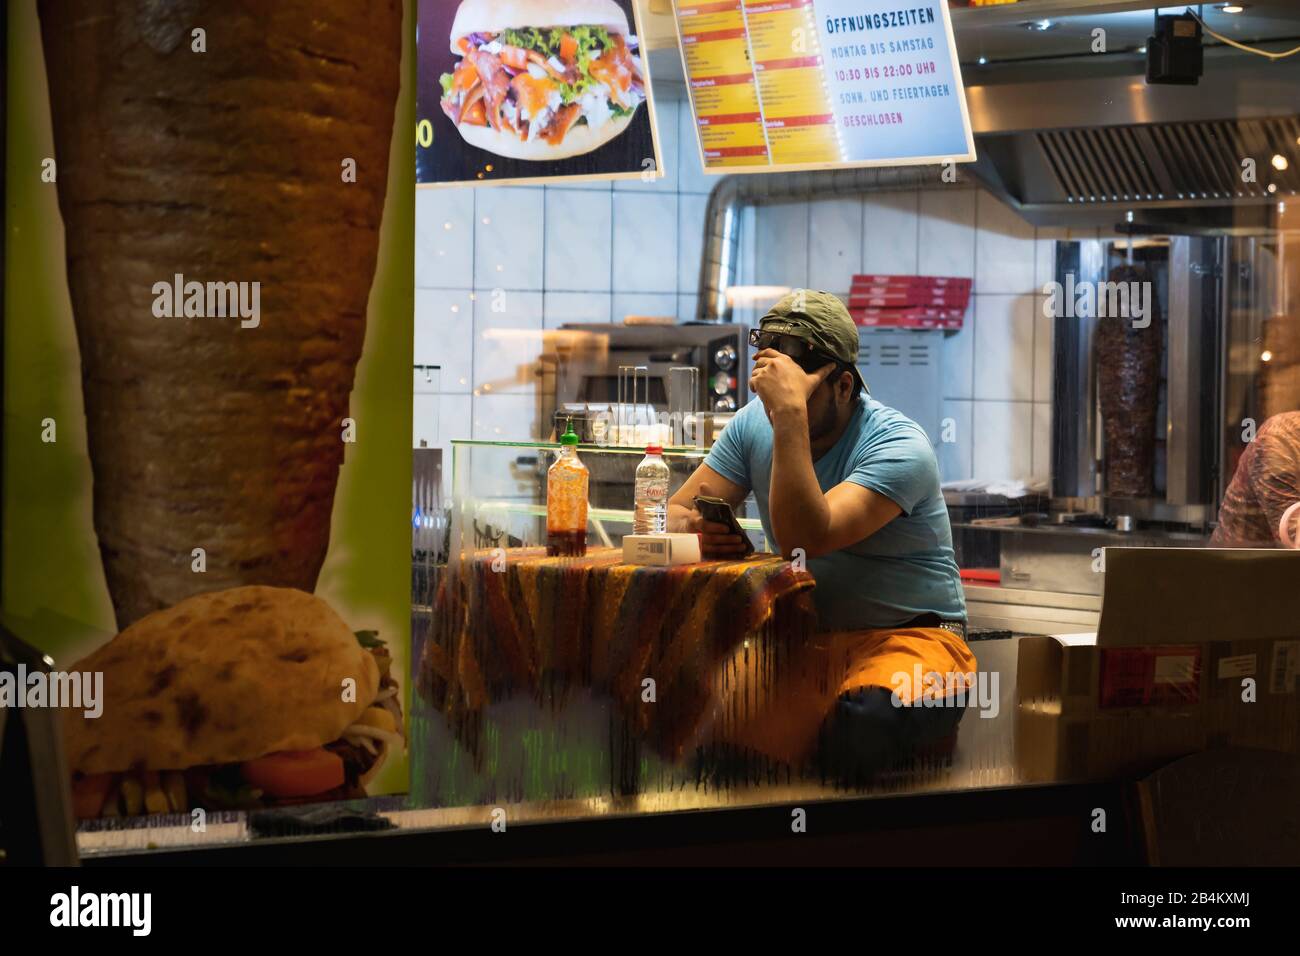 Utilisateur de smartphone dans la boutique kebab, photographie de rue, Allemagne Banque D'Images